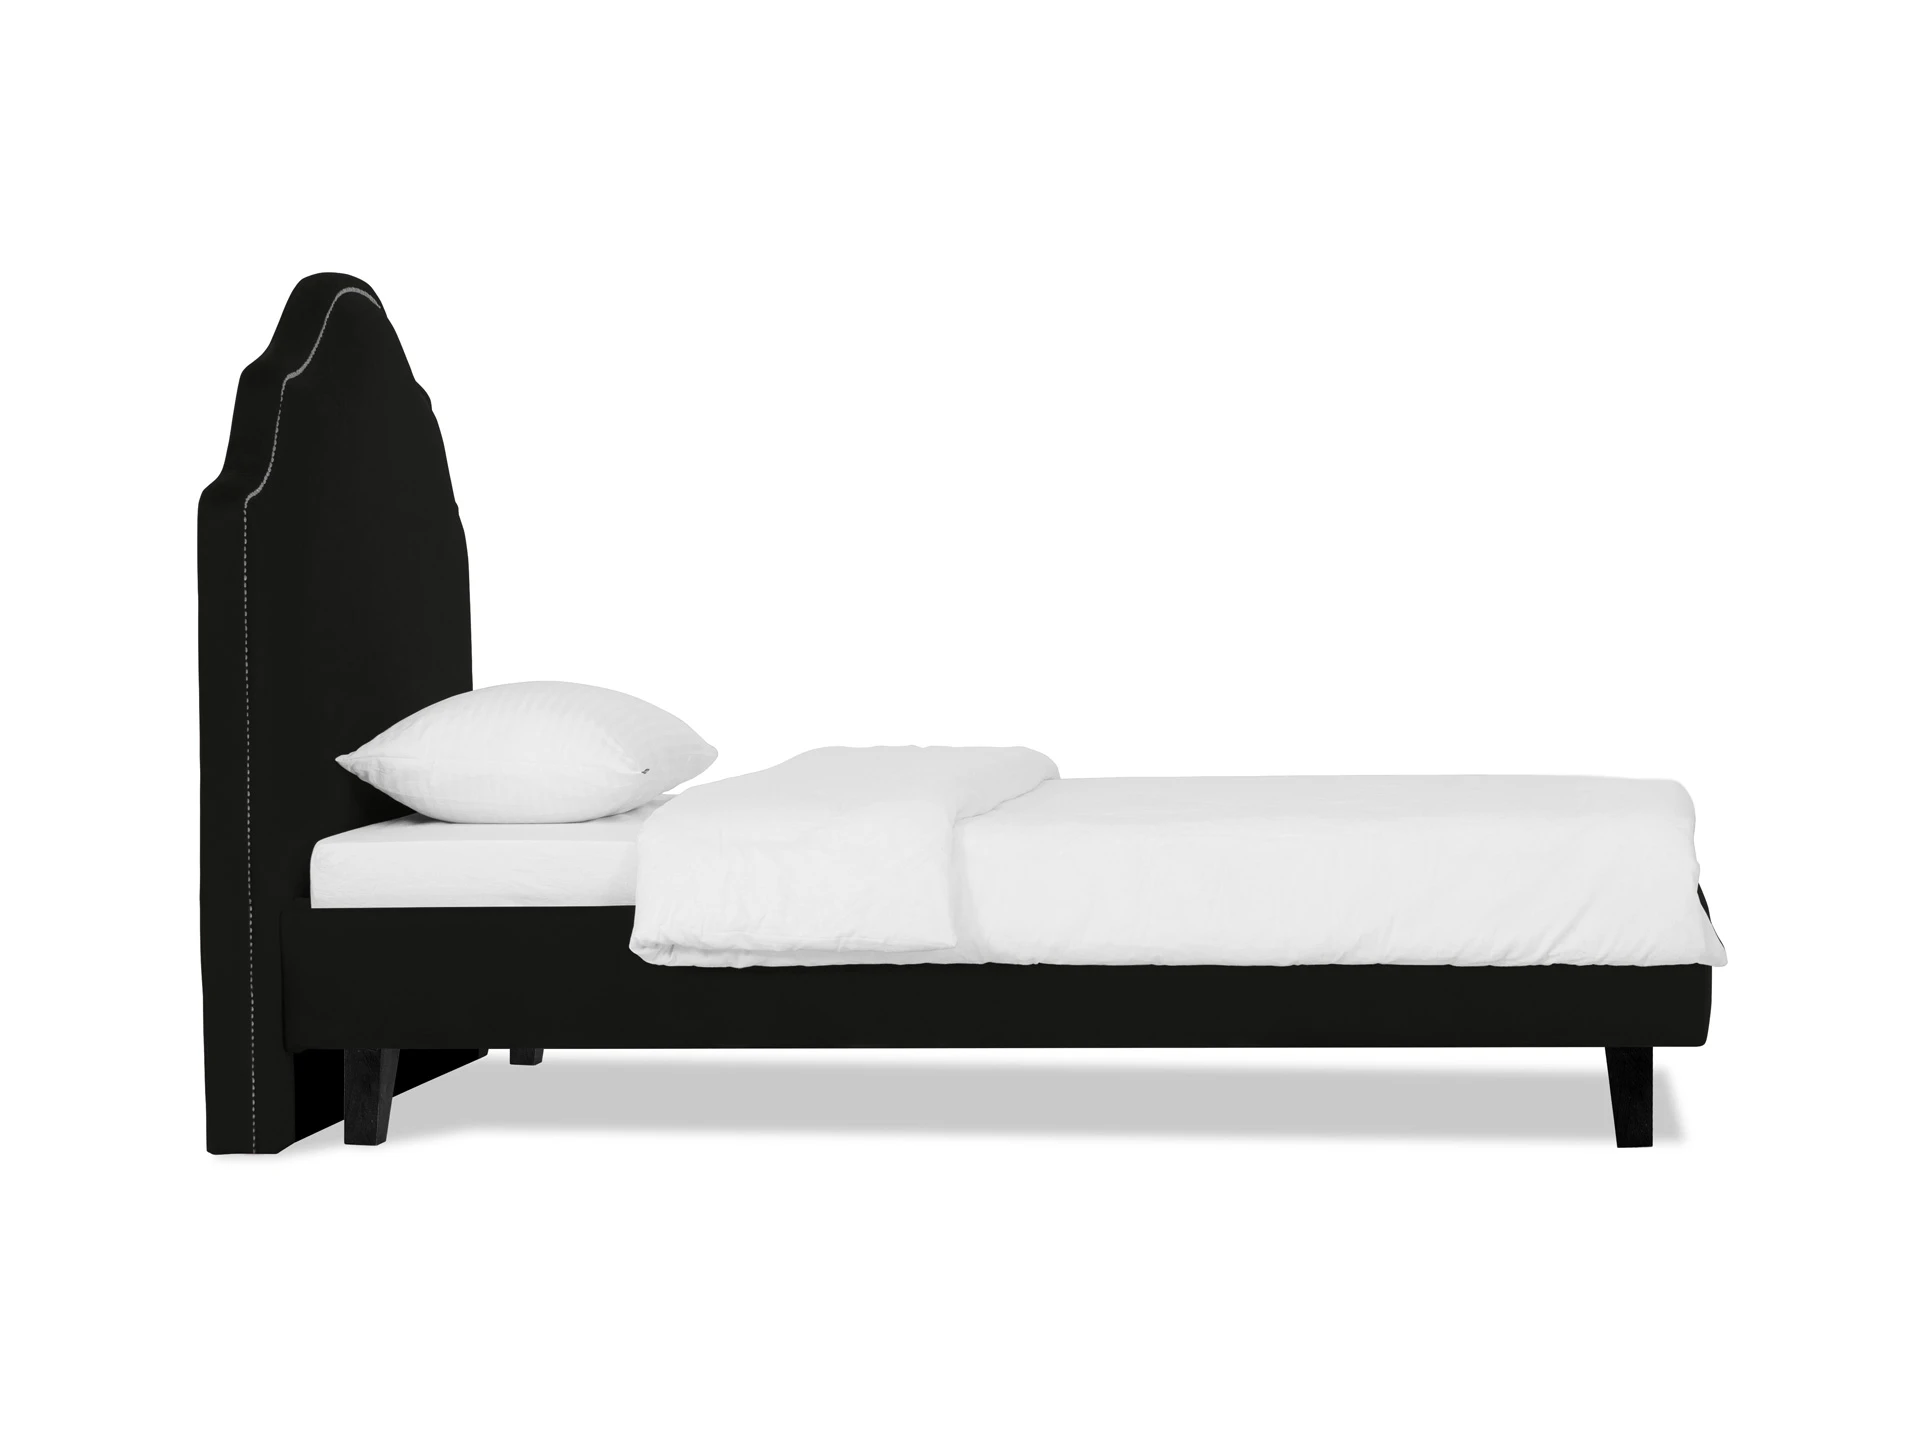 Кровать Princess II L 575178